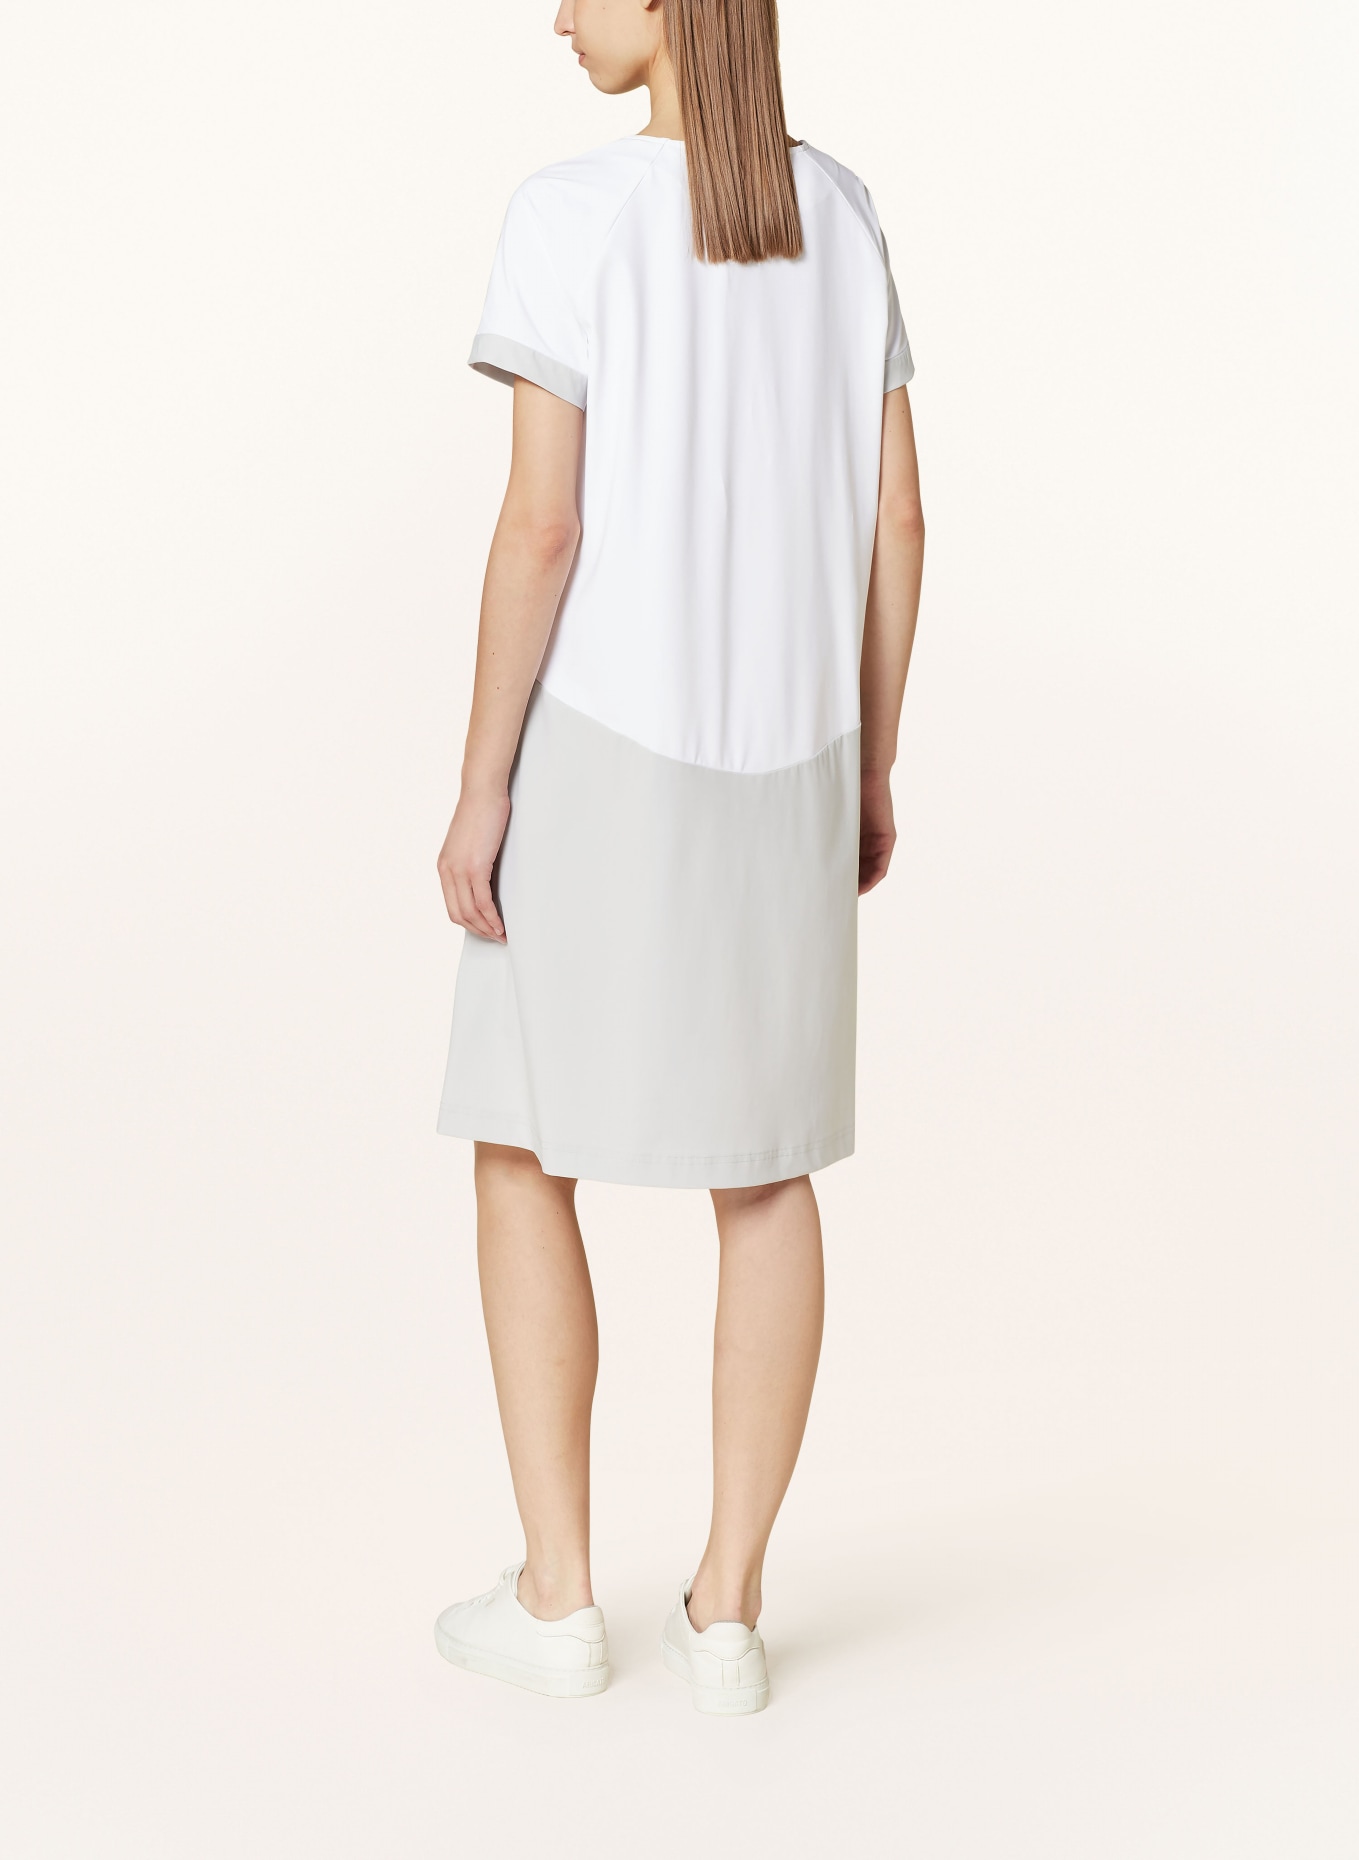 RAFFAELLO ROSSI Dress GOBINA in mixed materials, Color: WHITE/ LIGHT GRAY (Image 3)